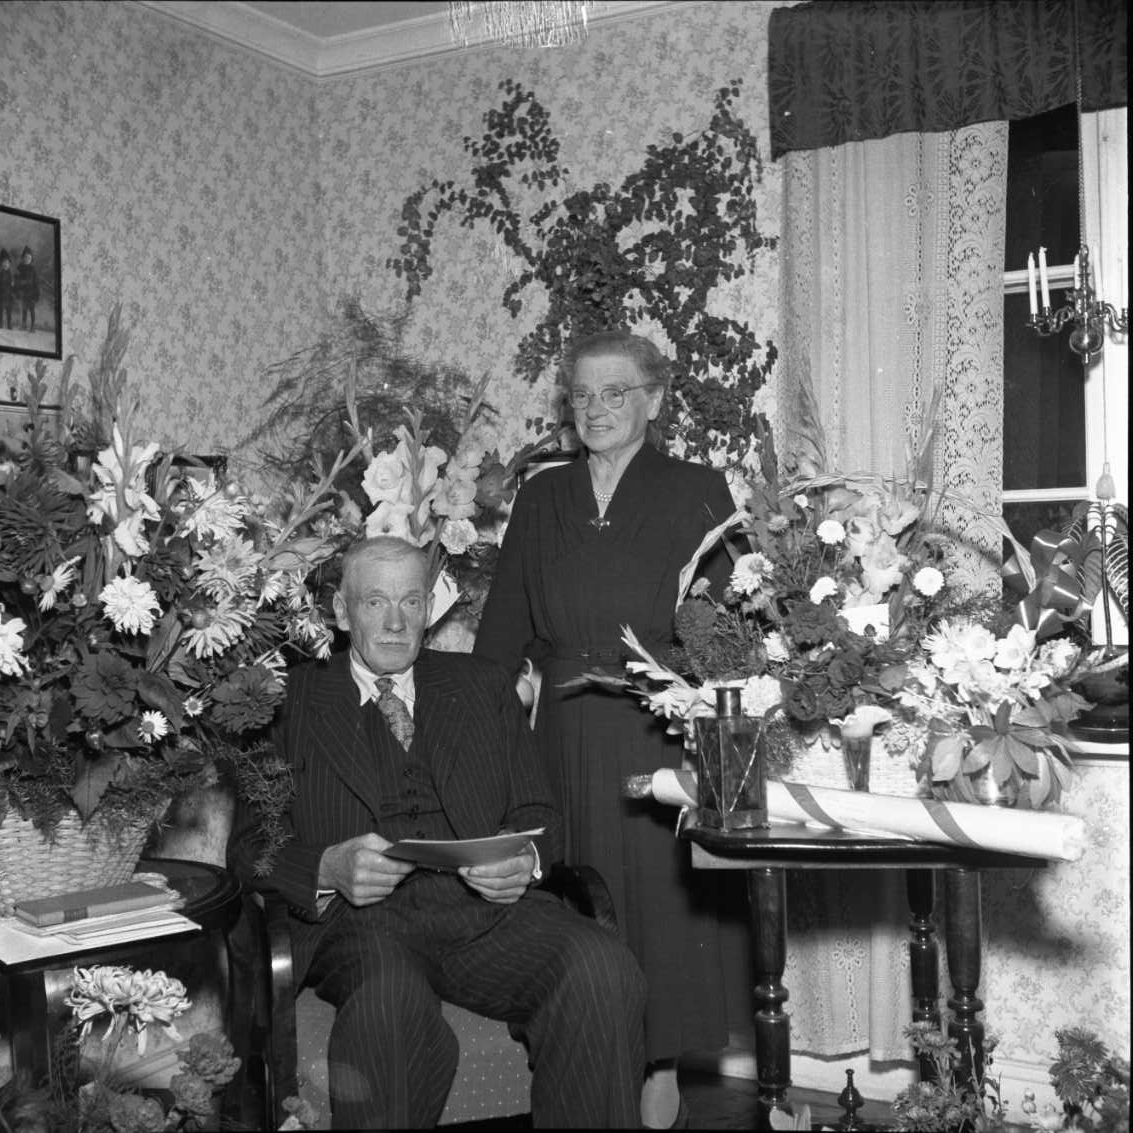 Gruppbild hemma hos Oskar Bergfoth och hans hustru Hulda Karolina. Oskar fyller 70 år och sitter på en stol omgiven av blommor. Hans hustru står bakom honom.